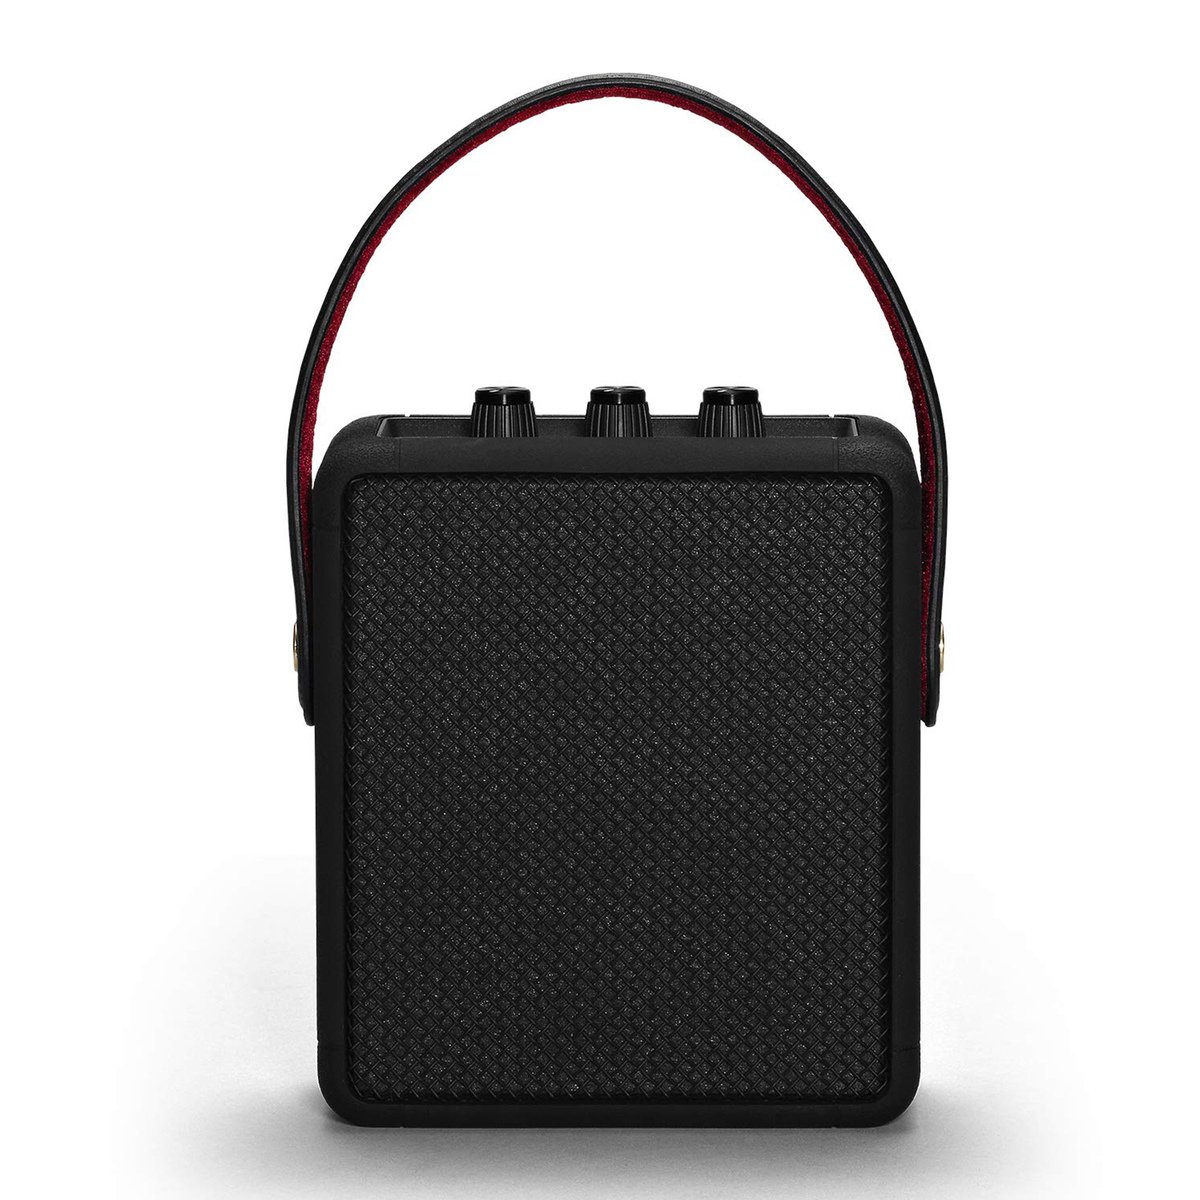 Marshall Portable Bluetooth Speaker STOCKWELL II Black